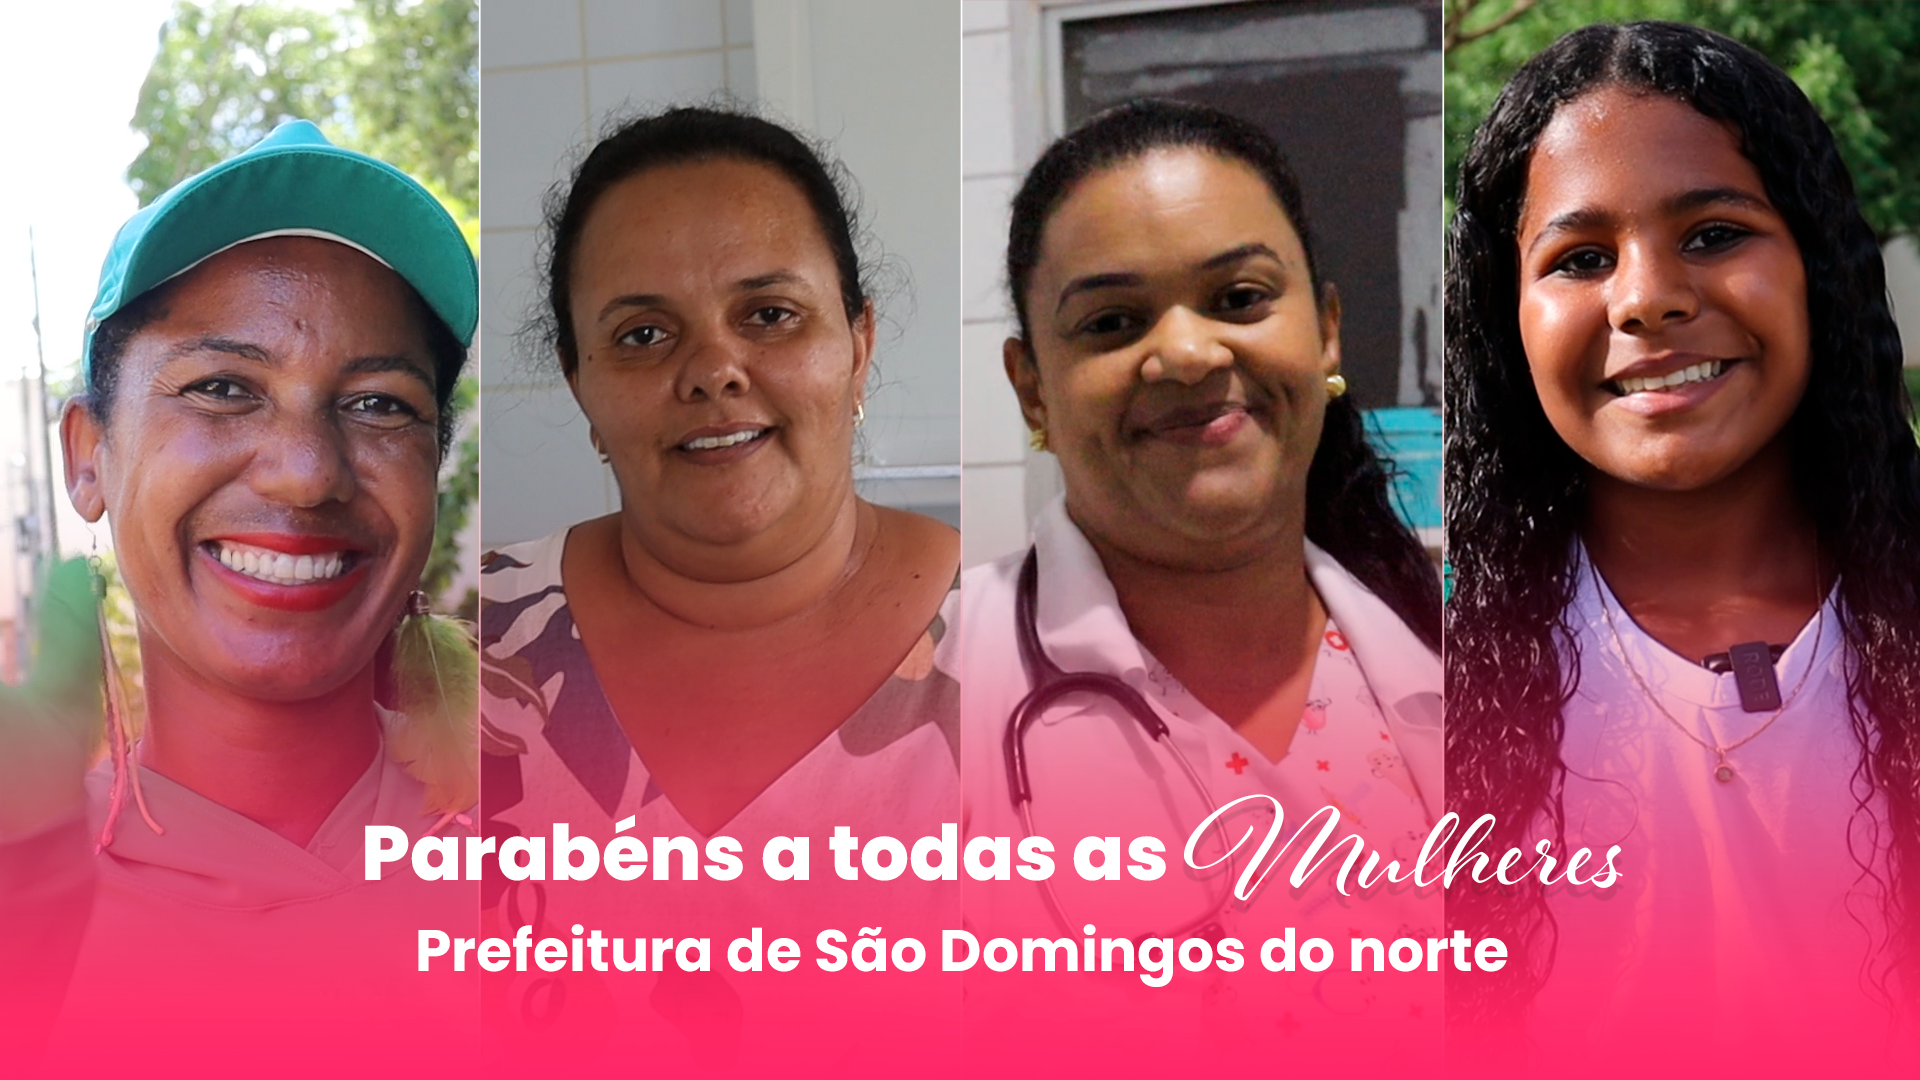 Vídeo: Prefeitura Municipal de São Domingos do Norte, parabeniza todas as mulheres.